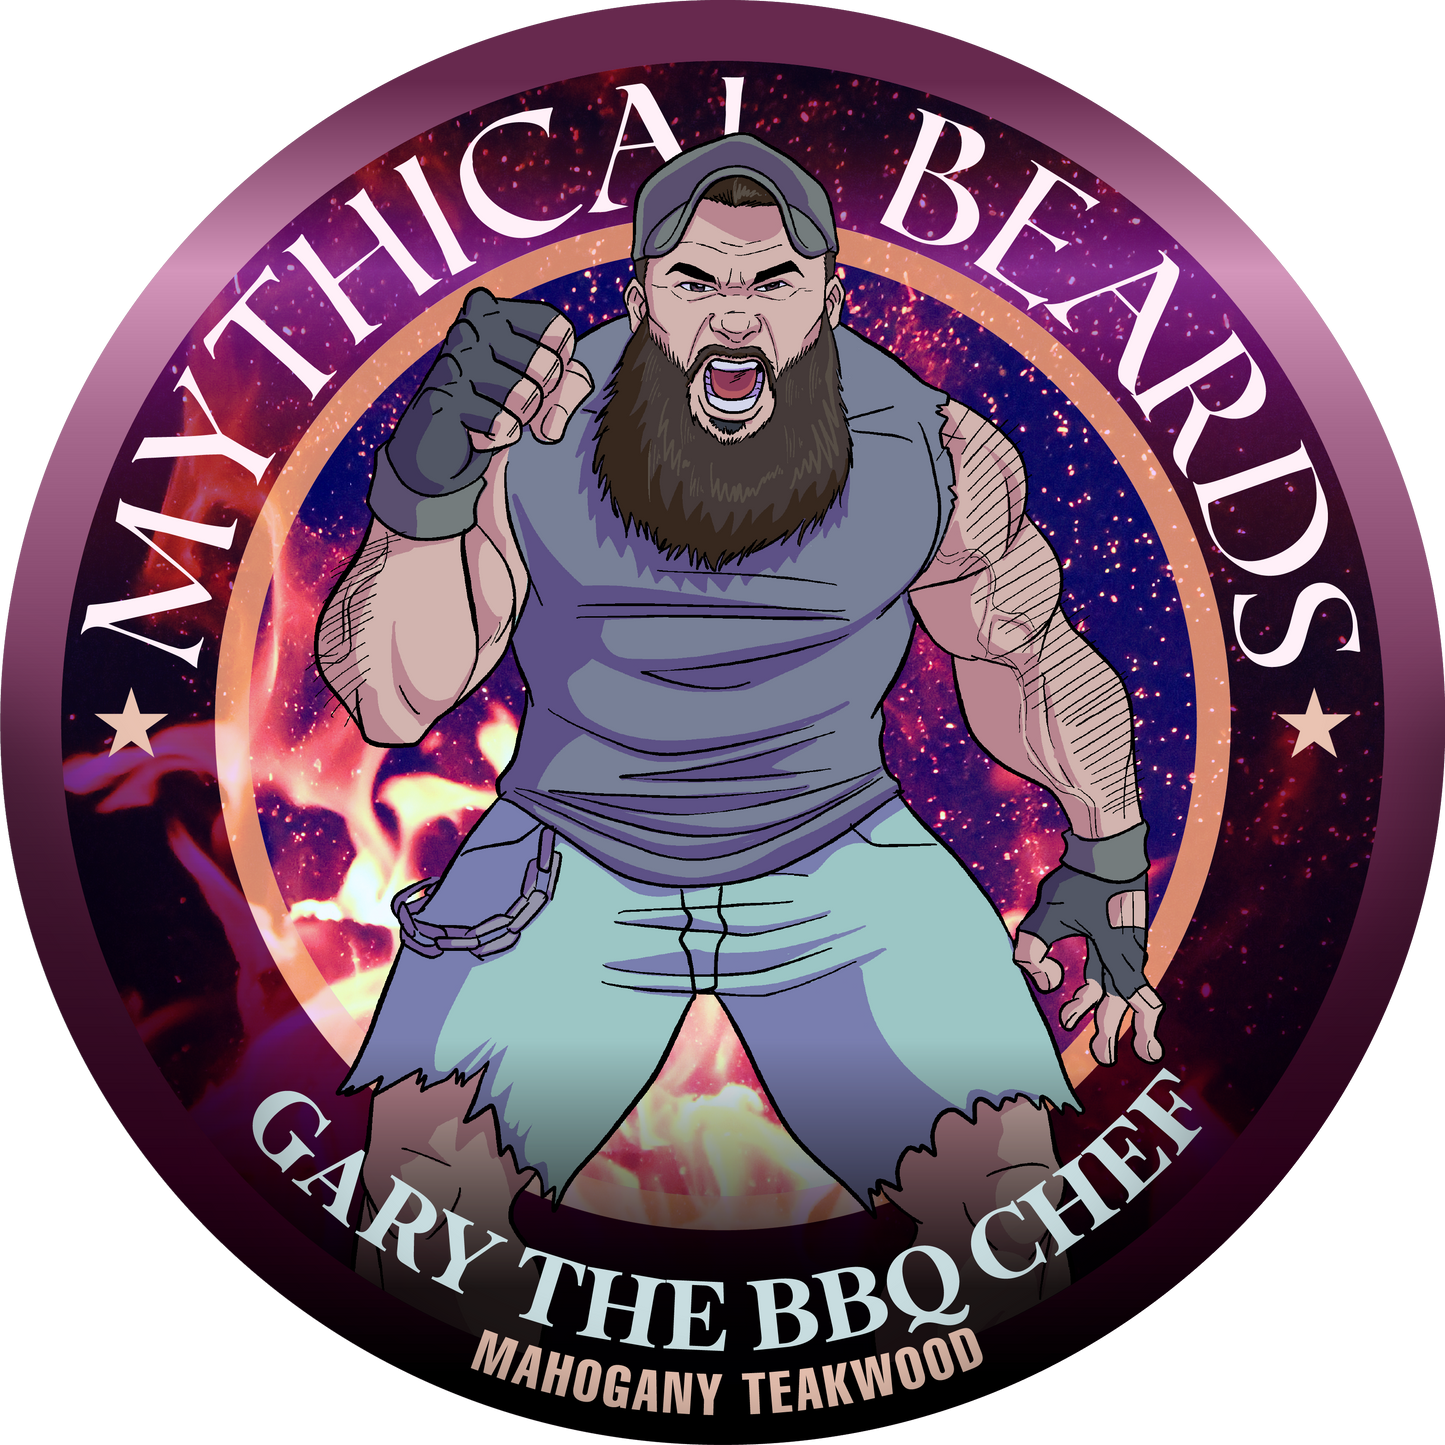 Gary the BBQ Chef x Mythical Beards Beard Oil